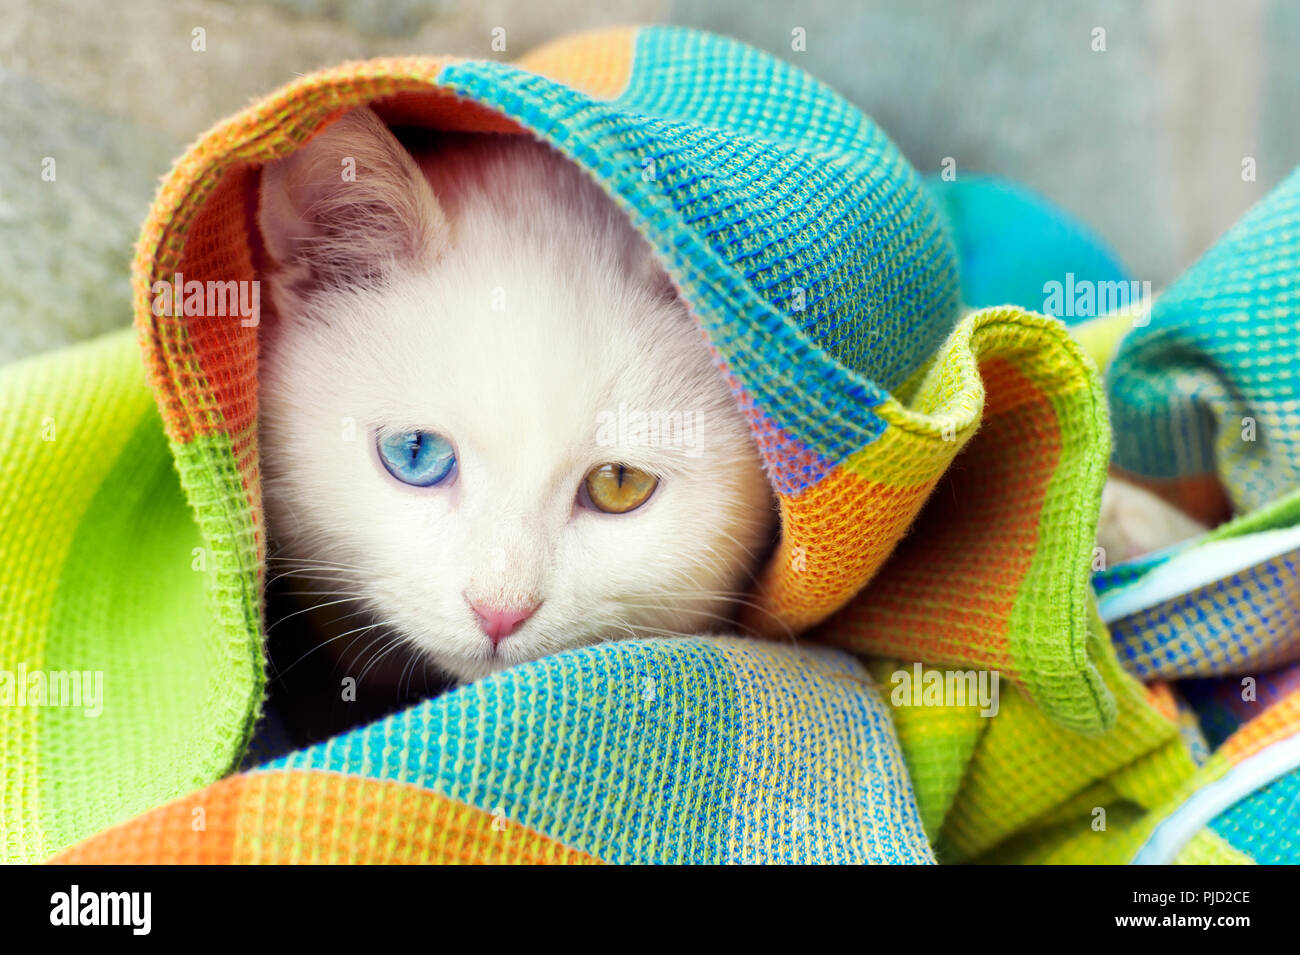 Hermoso blanco extraño eyed gatito escondido debajo de una manta Foto de stock